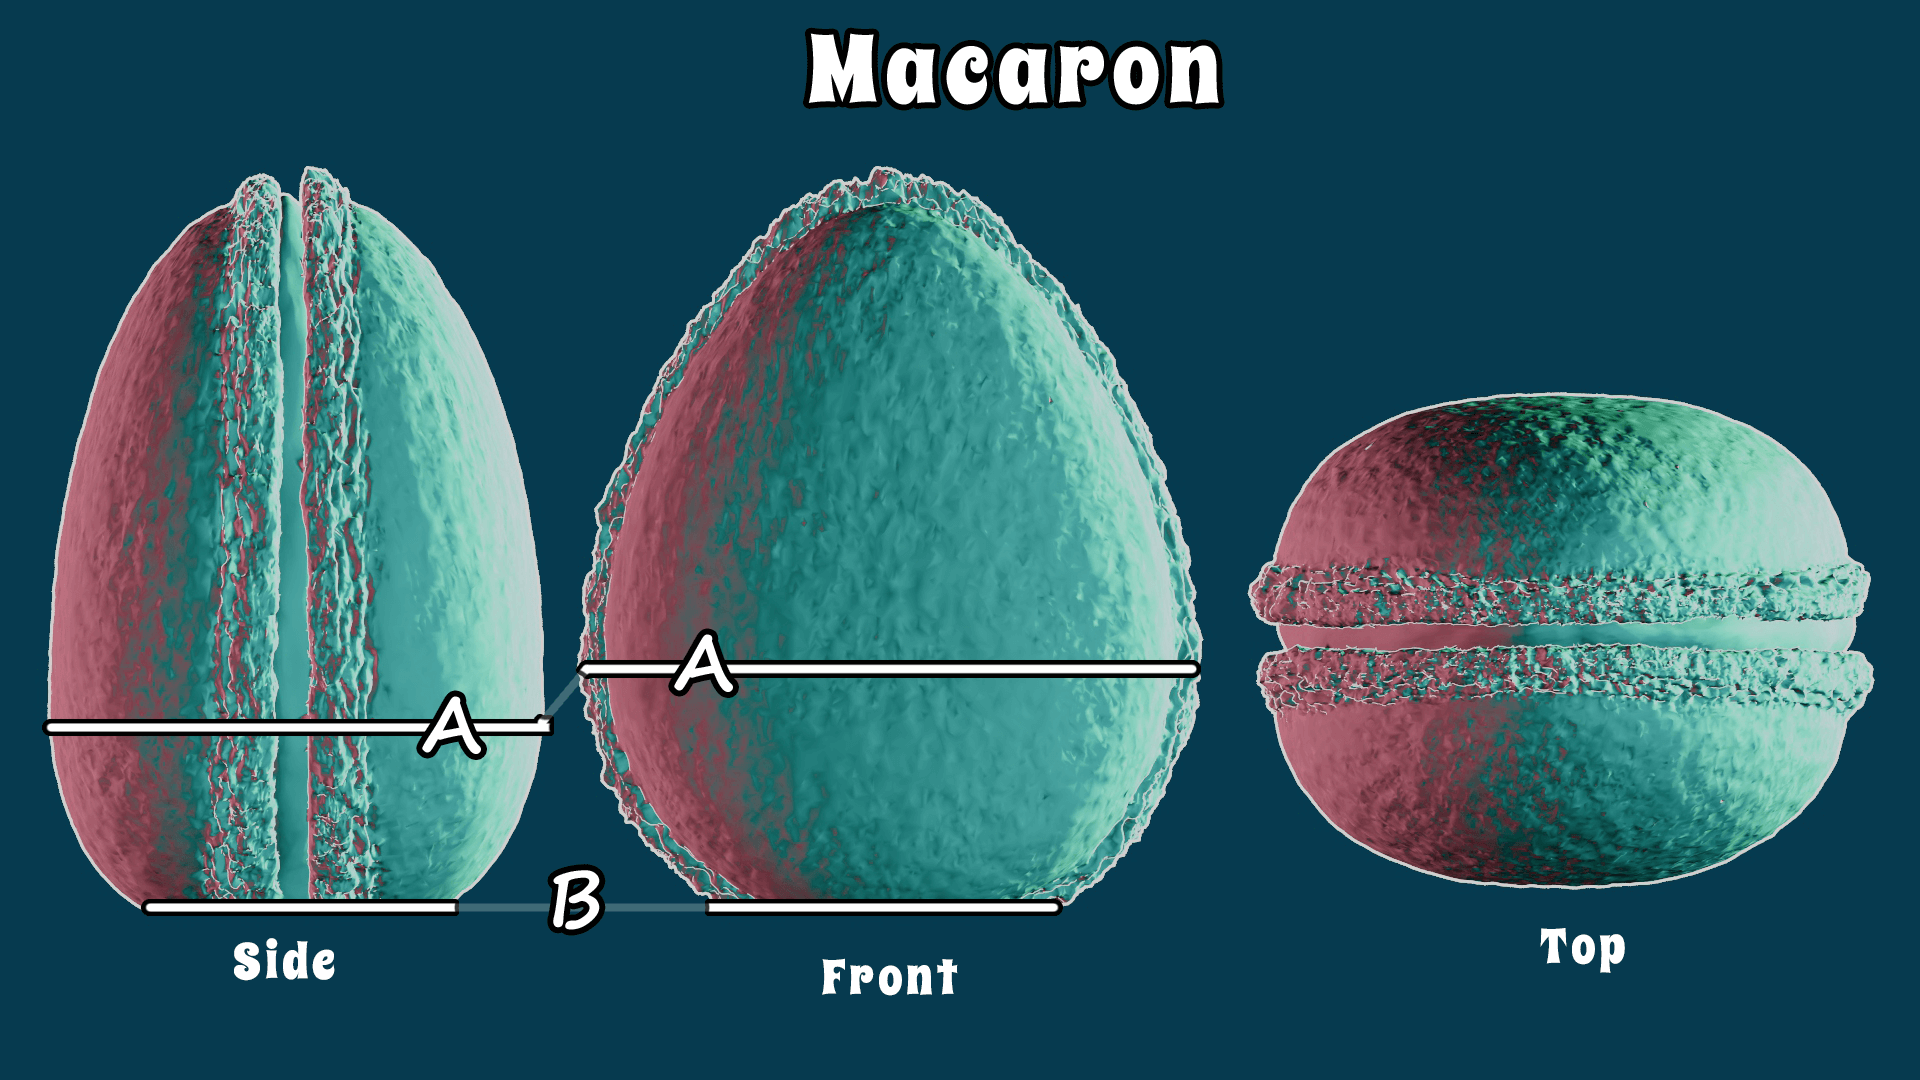 *Macaron